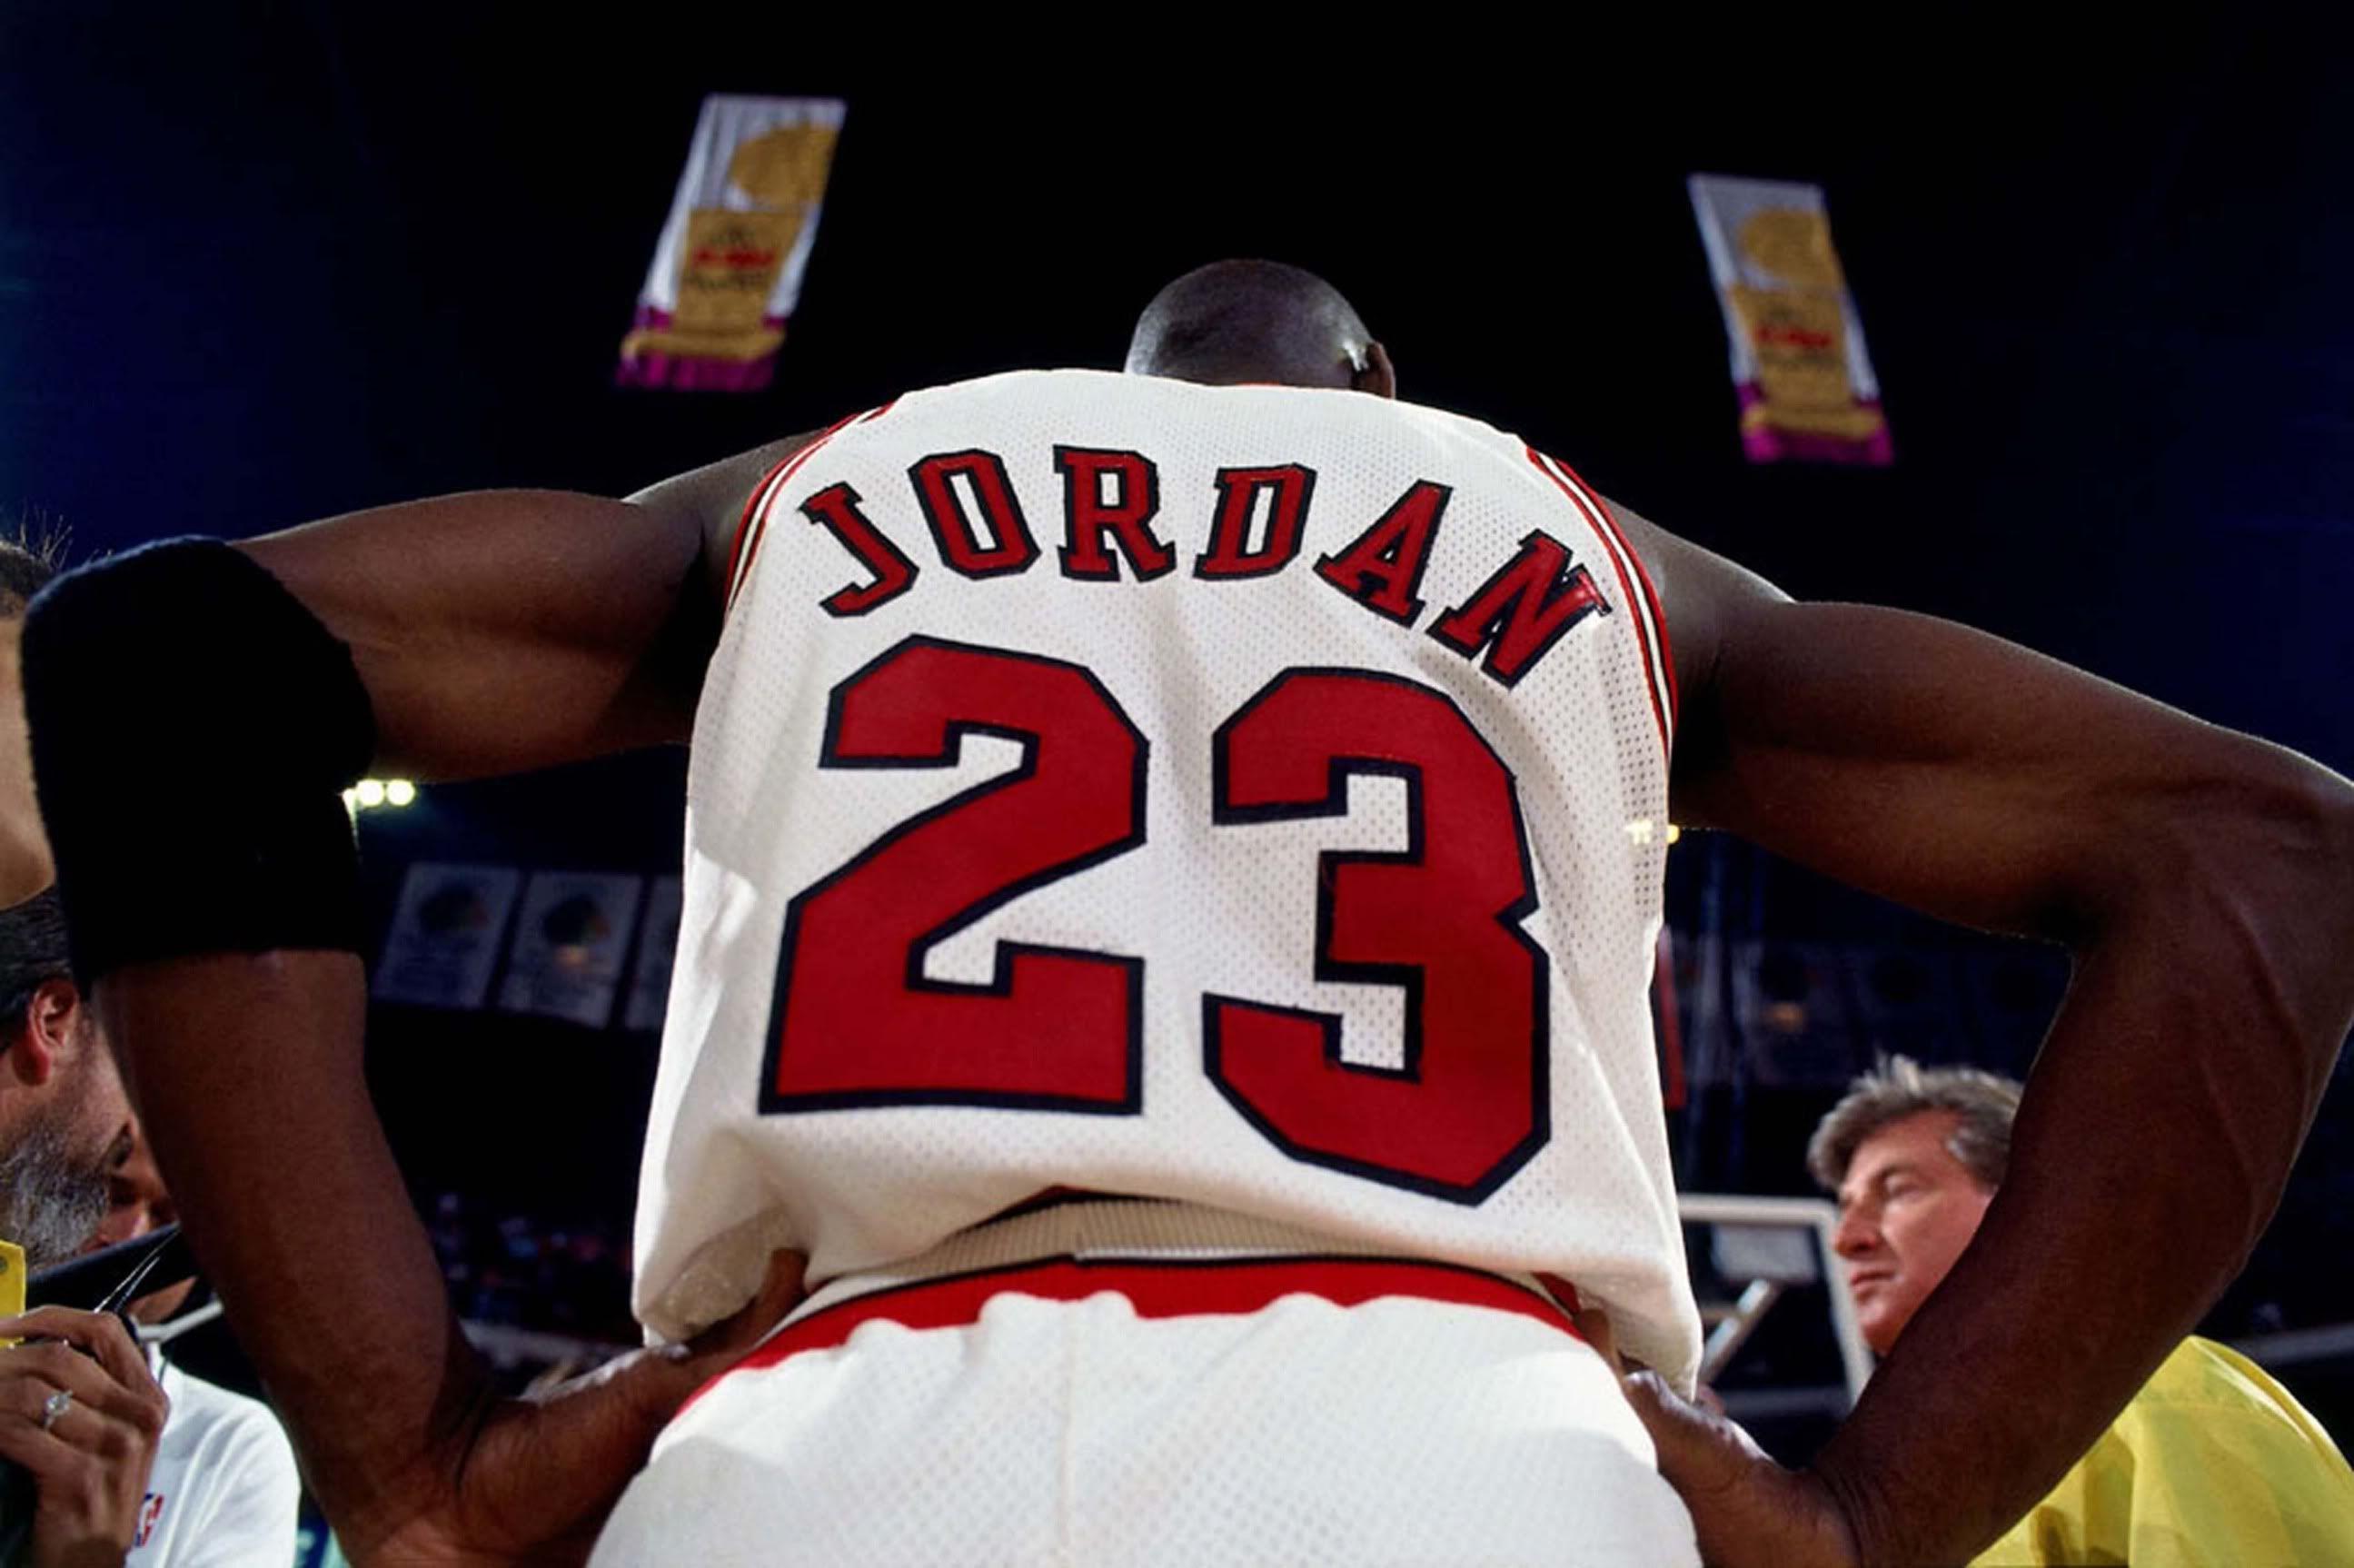 Michael Jordan HD Wallpapers - Wallpaper Cave